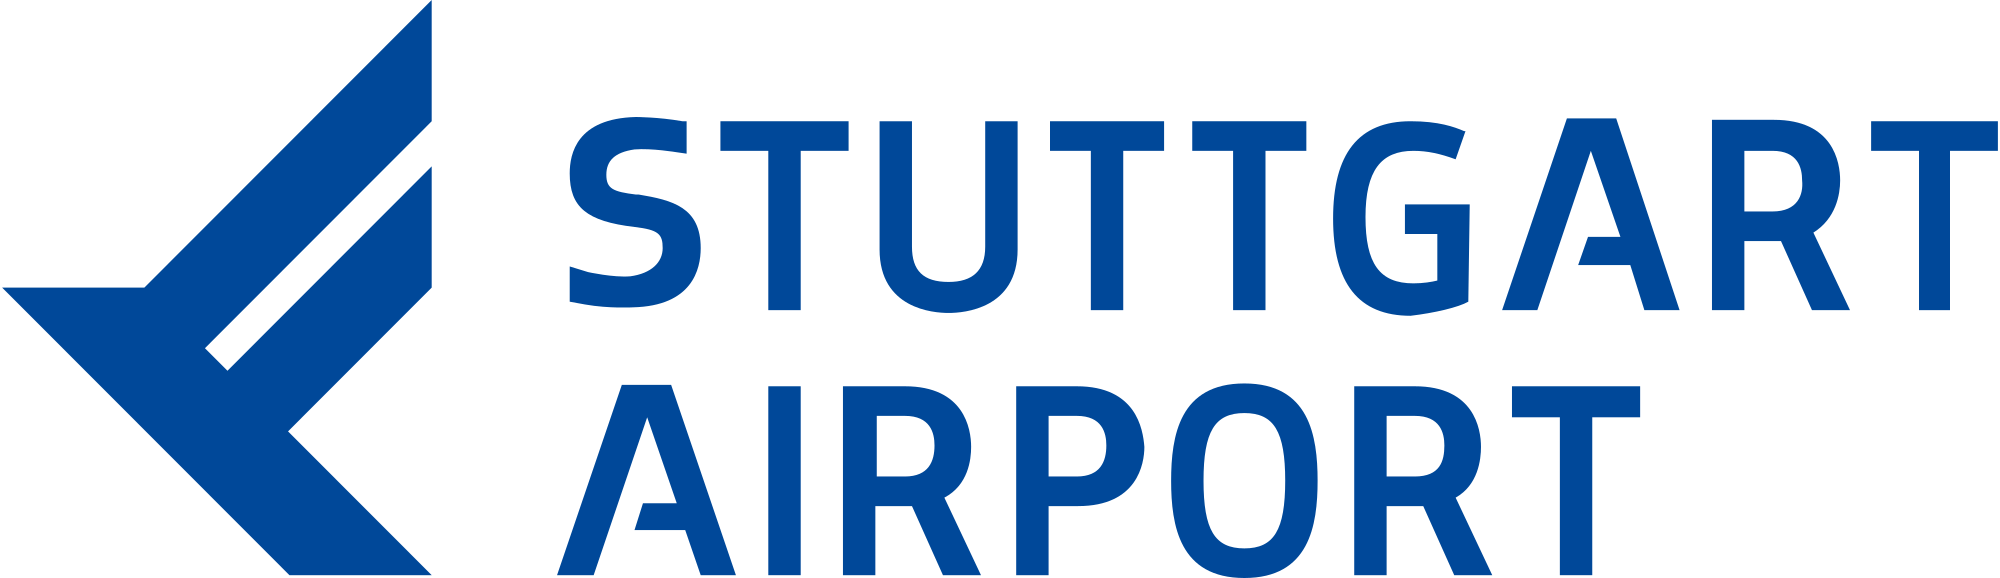 Sân bay Suttgart Airport